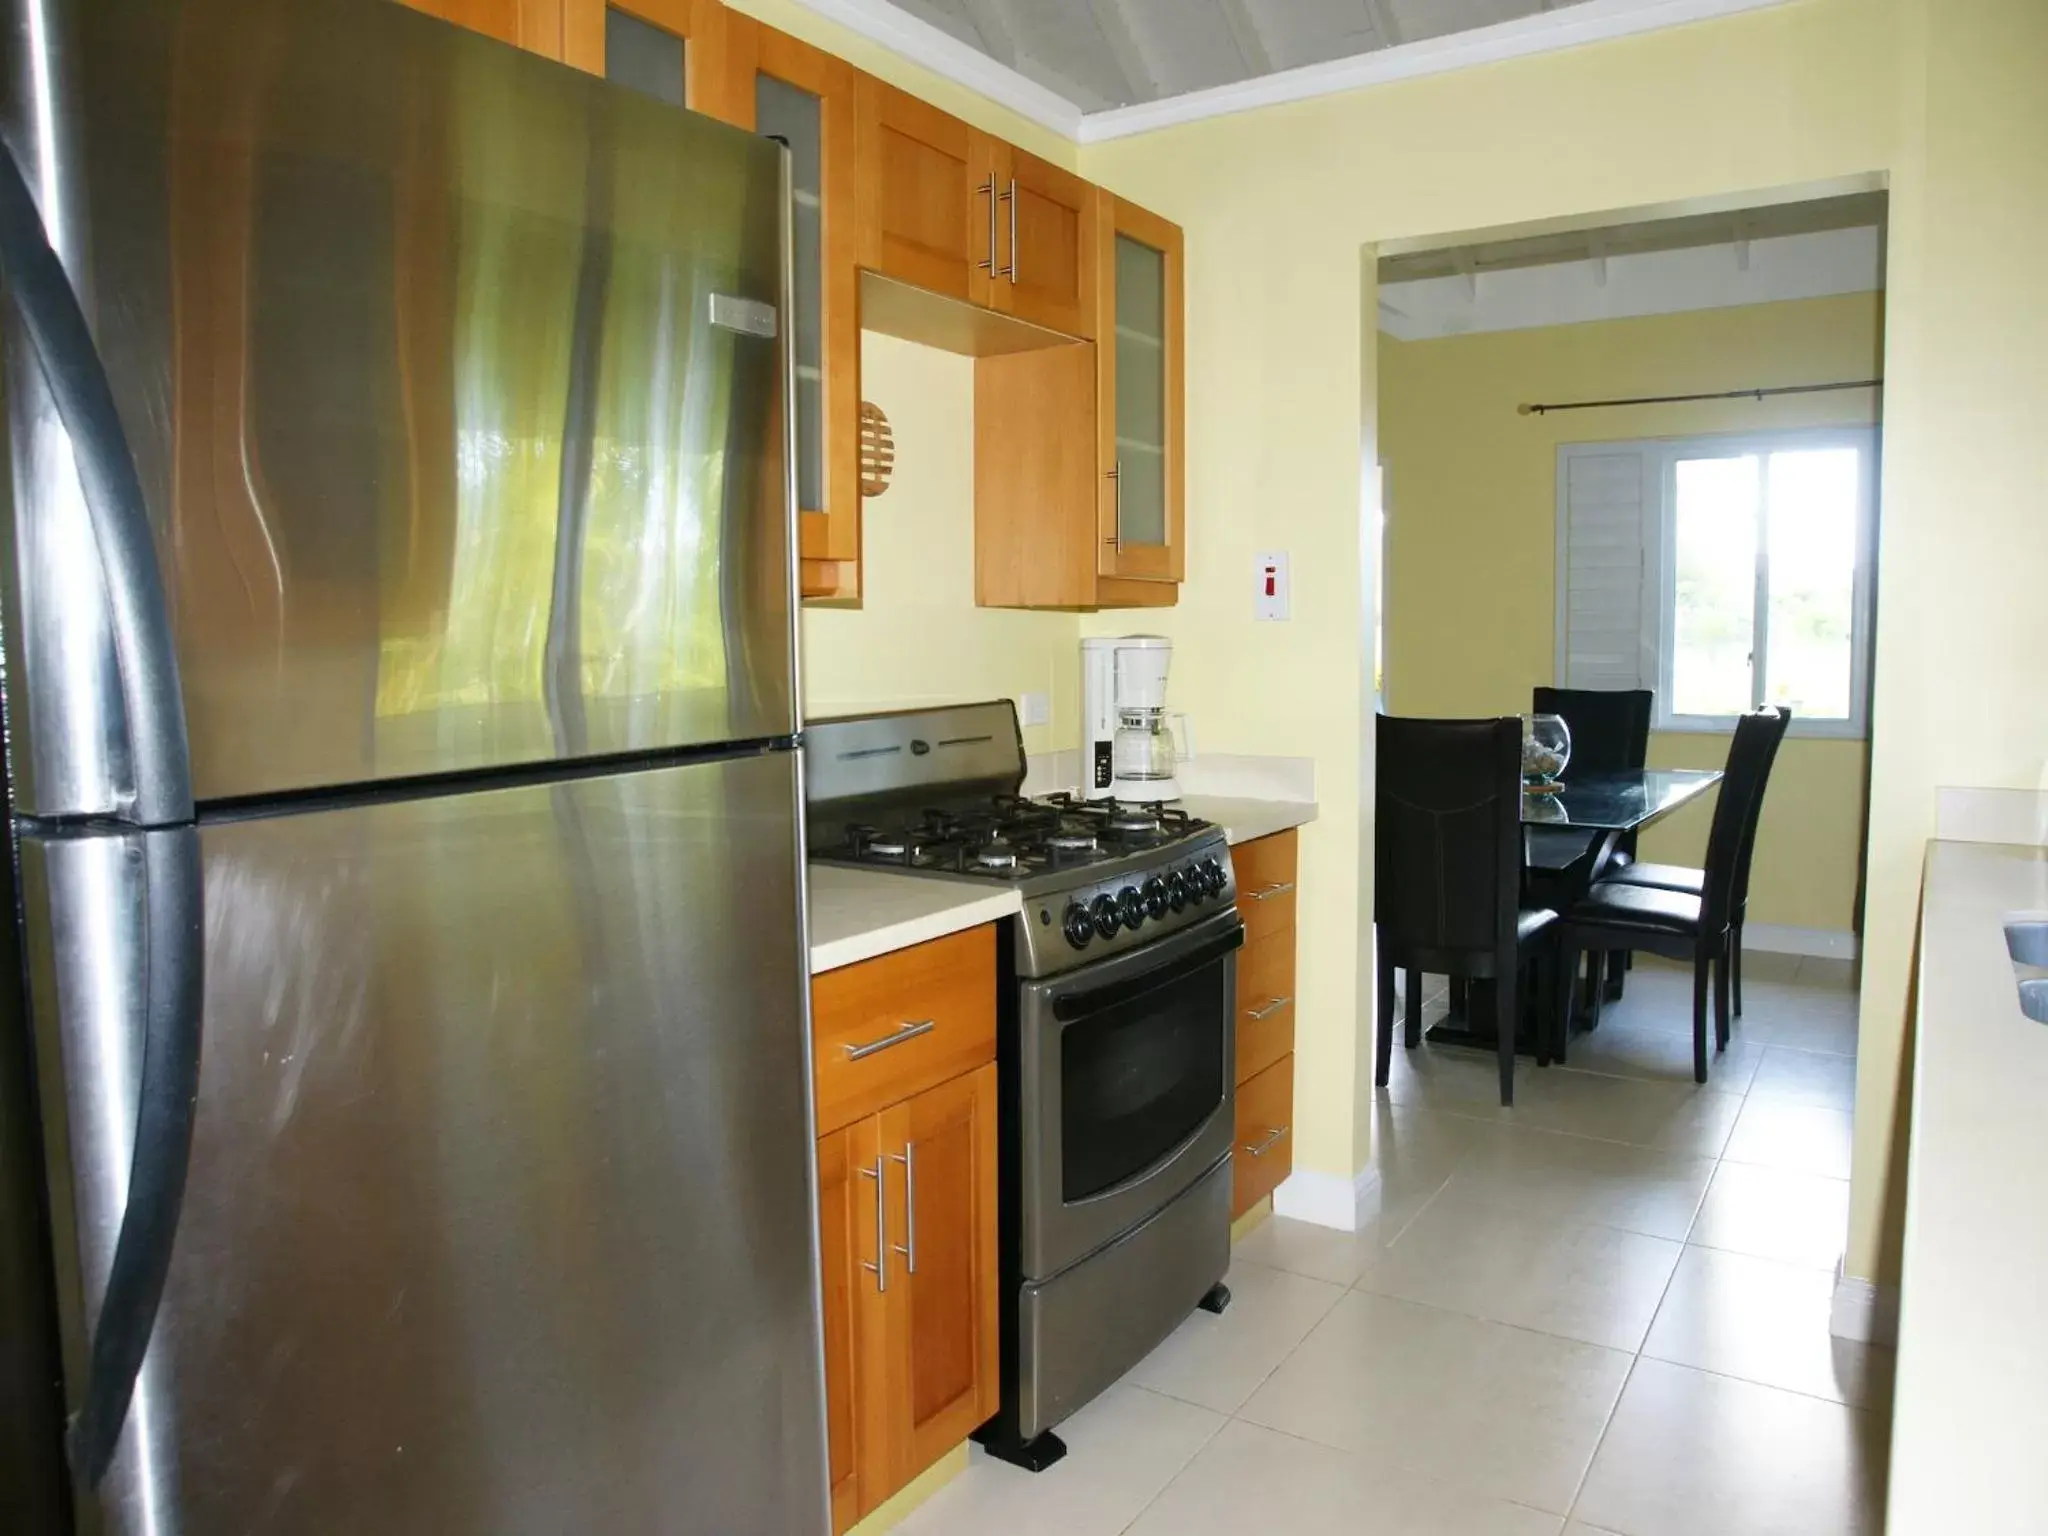 Kitchen or kitchenette, Kitchen/Kitchenette in Jamnick Vacation Rentals - Richmond, St Ann, Jamaica